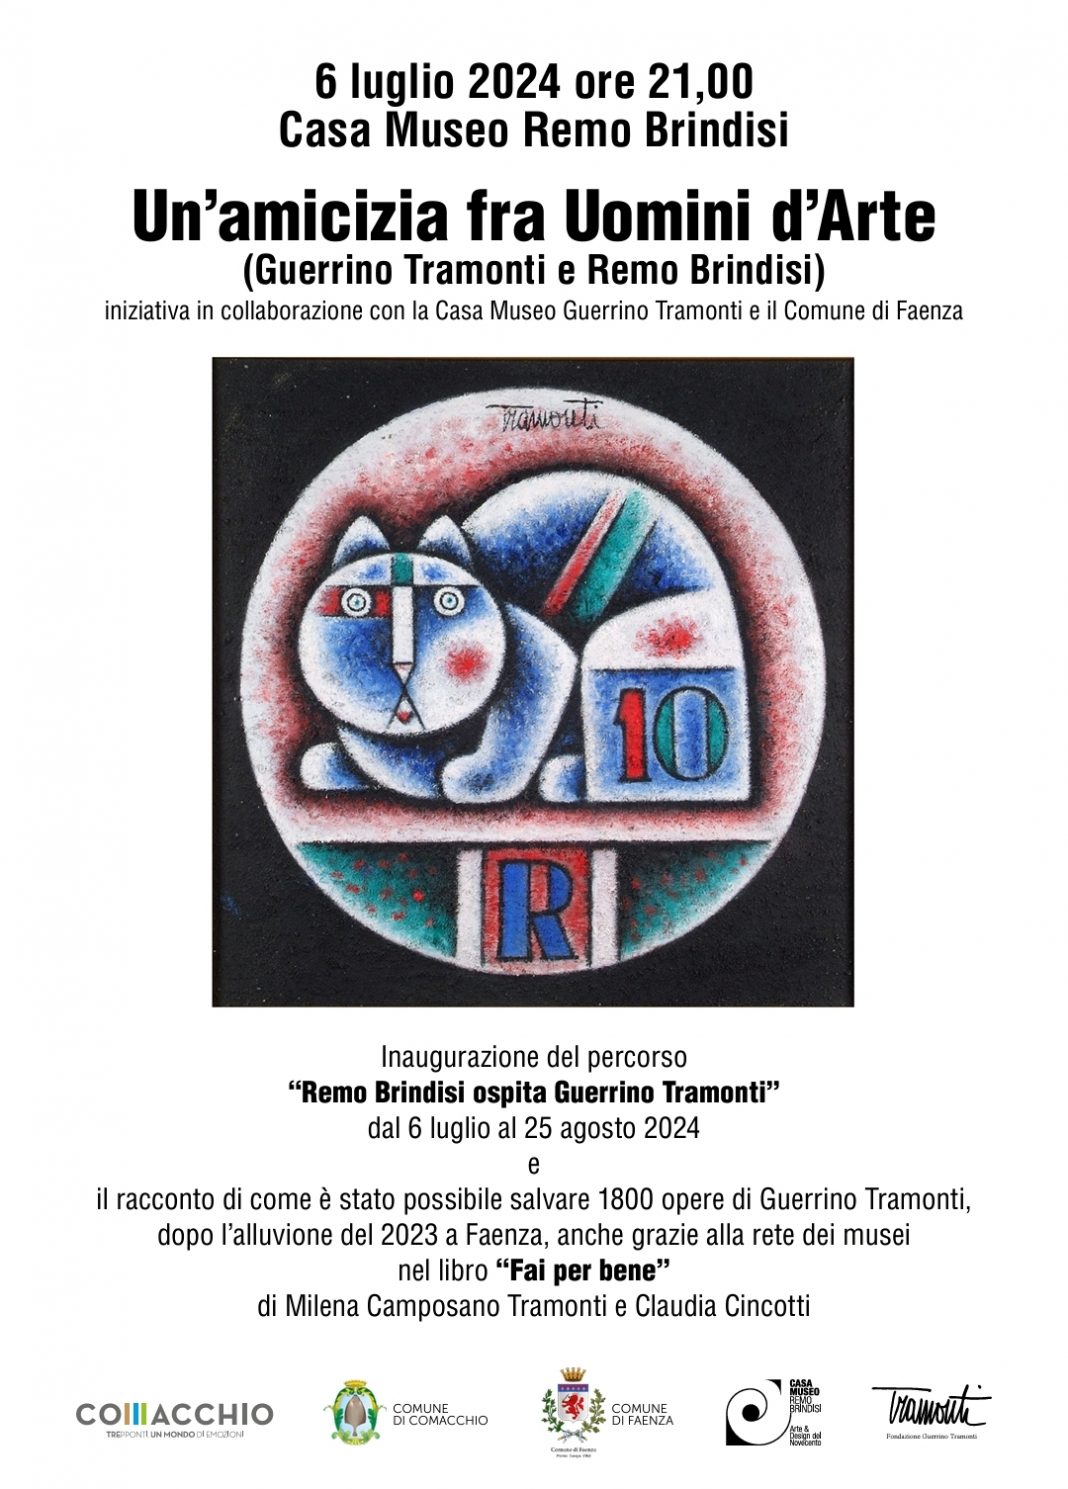 Un’amicizia fra Uomini d’Arte (Guerrino Tramonti, 1915-1992 e Remo Brindisi, 1918-1996)https://www.exibart.com/repository/media/formidable/11/img/1fd/cartolina-invito-1068x1489.jpg